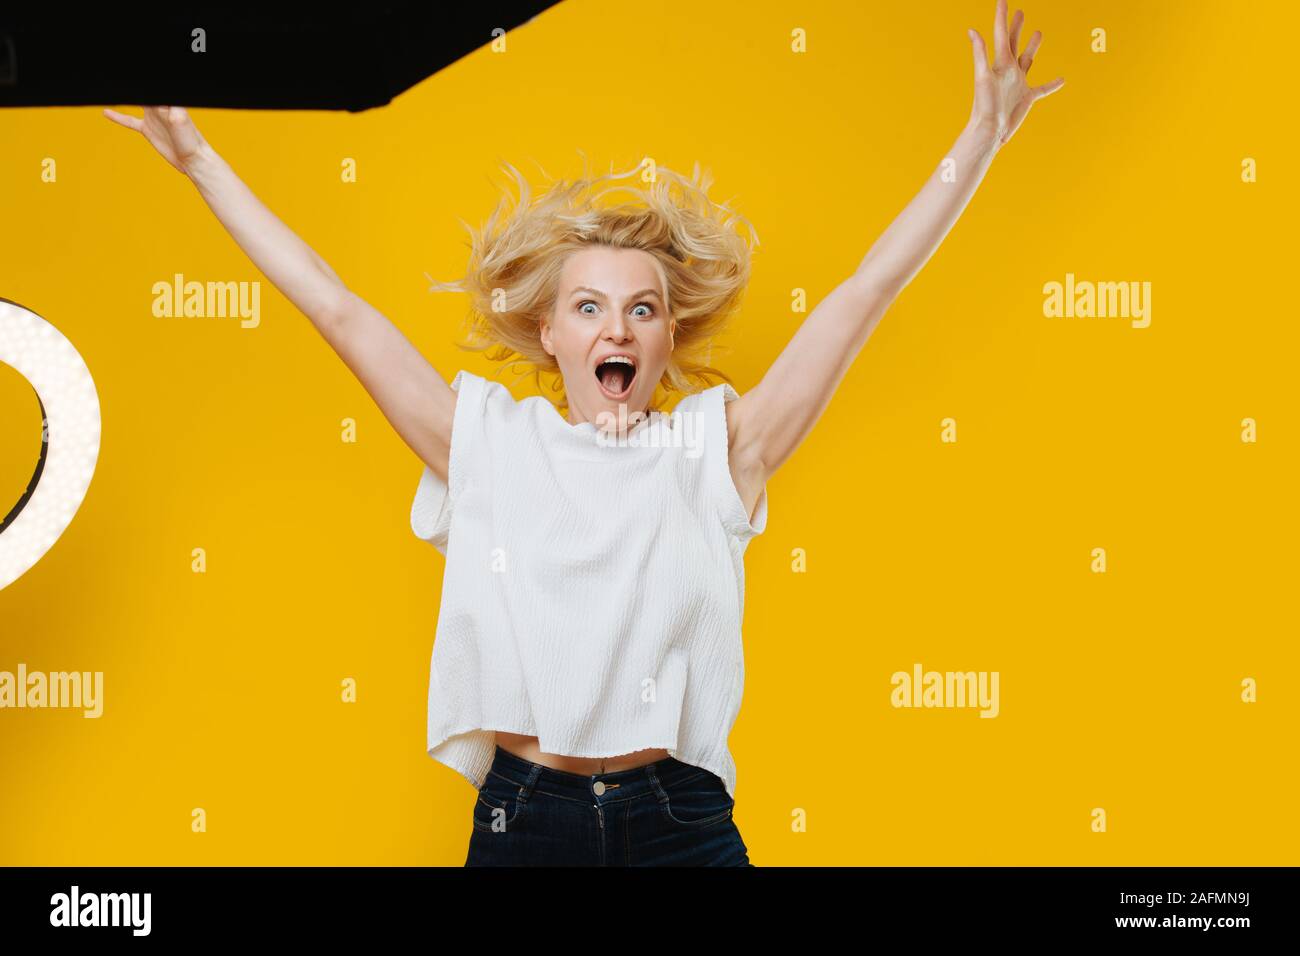 Grimaçant ludique blonde woman jumping avec les mains en l'air sur jaune Banque D'Images